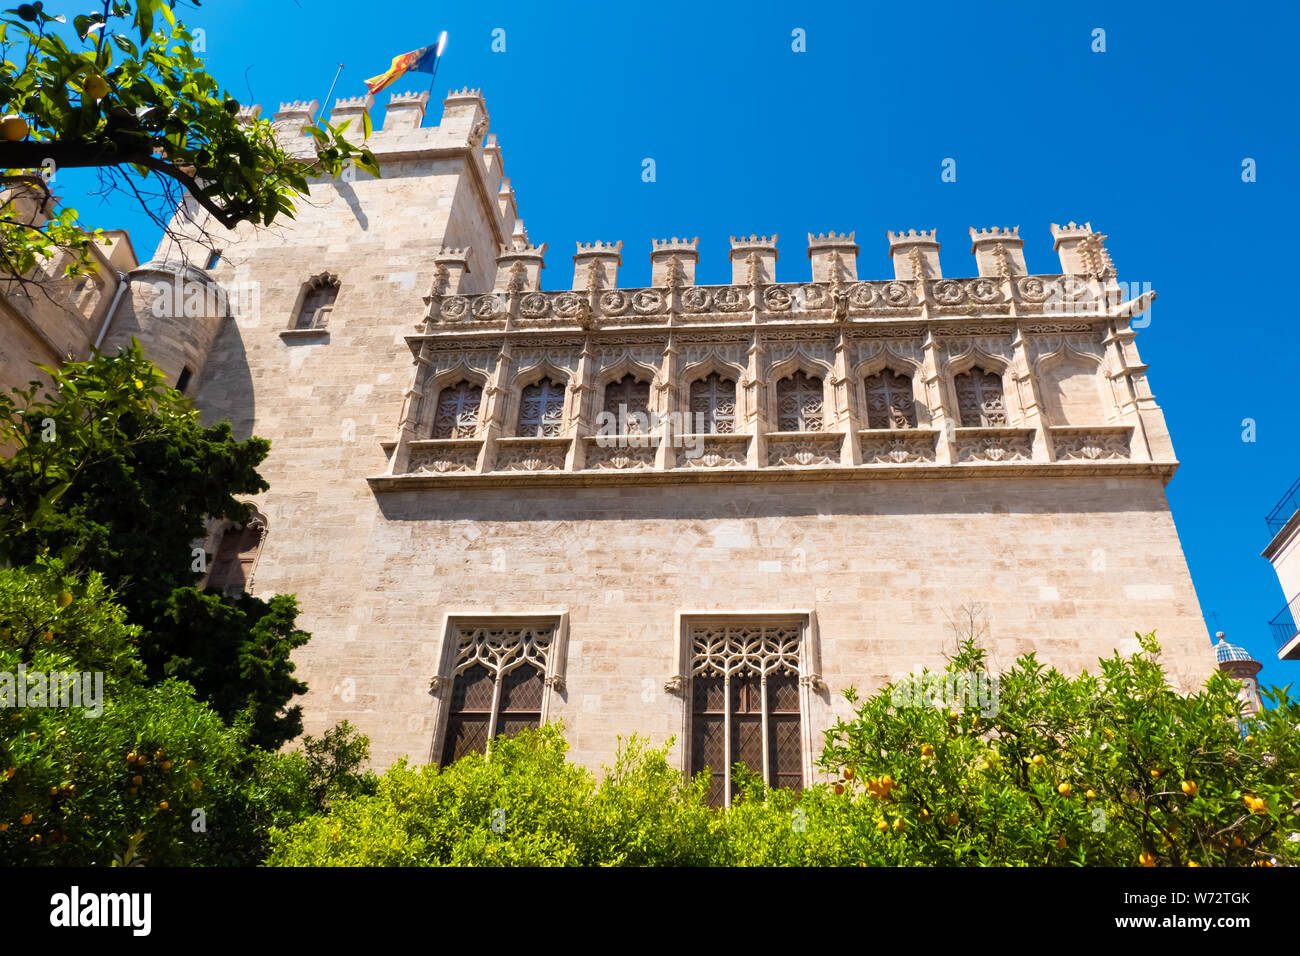 Die llotja de la Seda (mittelalterliche Seide Exchange), eine späte Valencia im gotischen Stil zivile Gebäude in Valencia, Spanien. Stockfoto